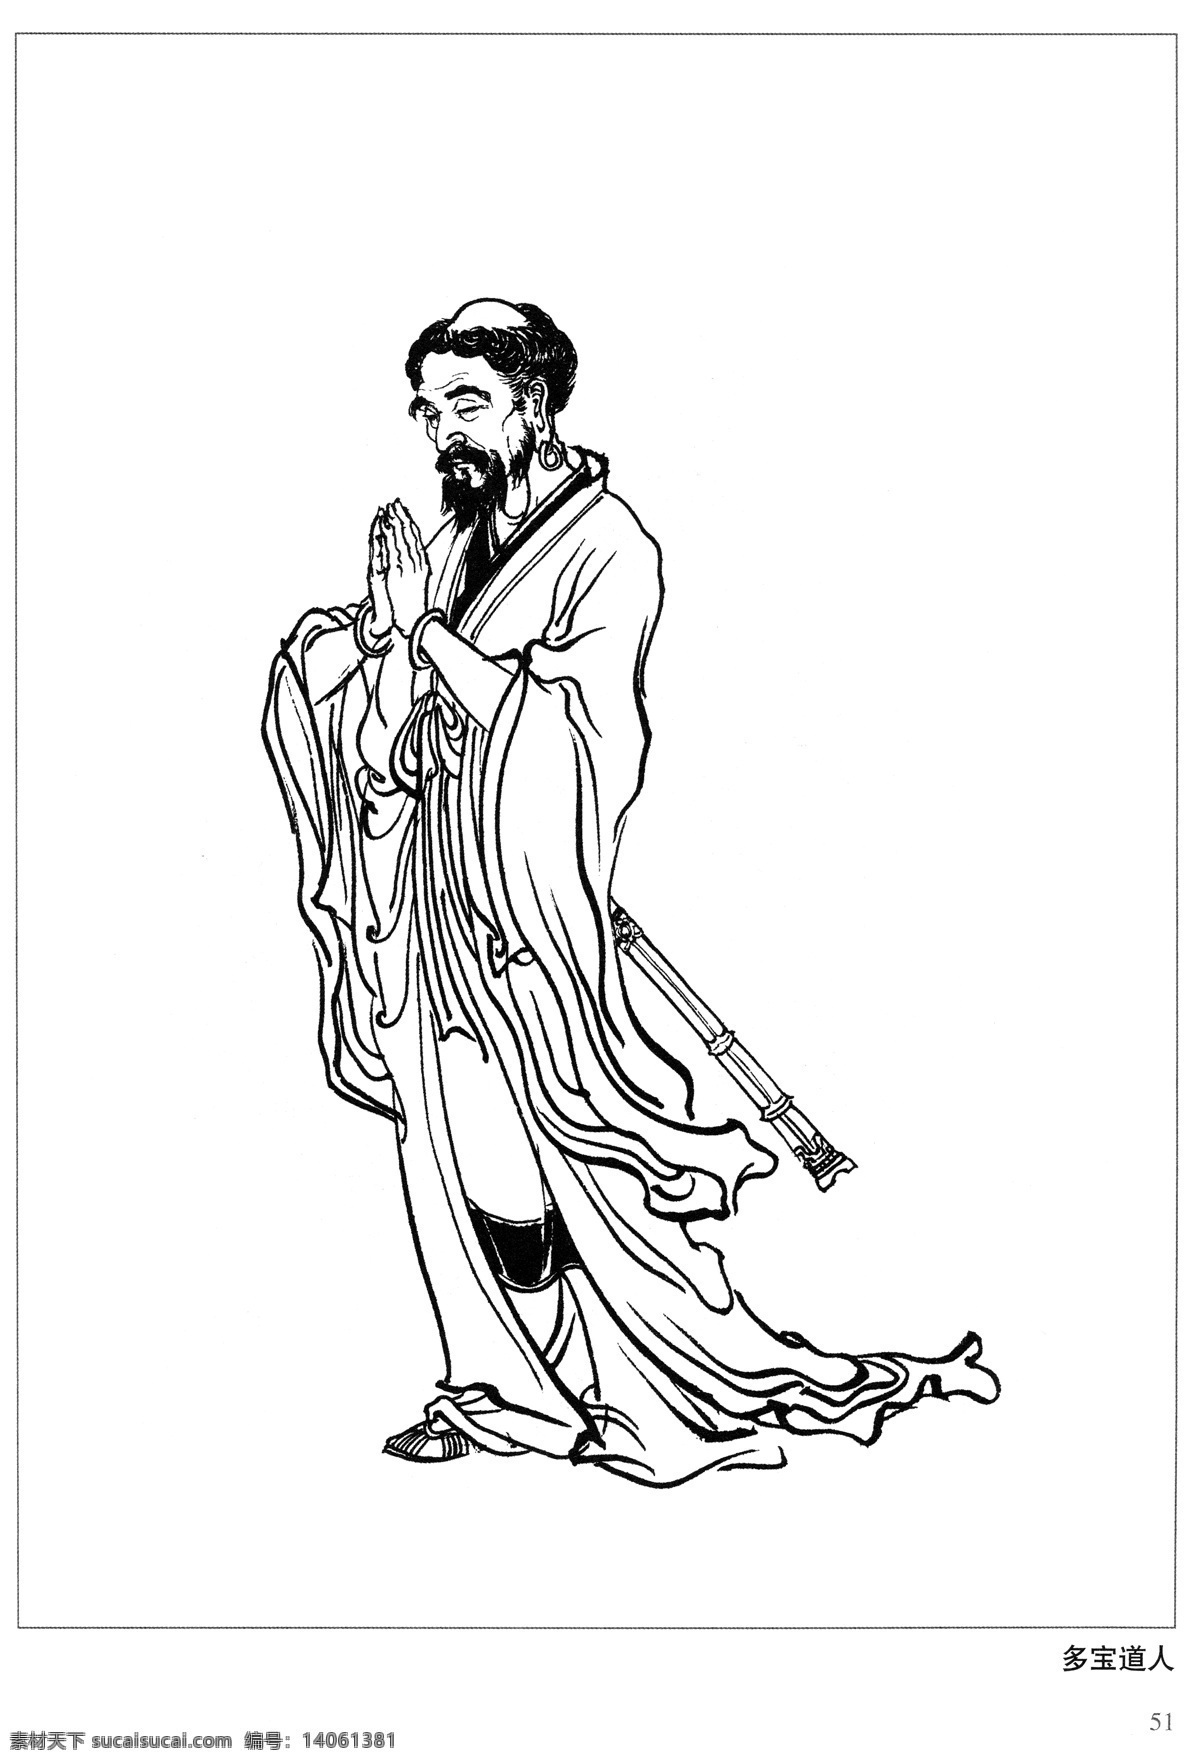 多宝道人 封神演义 古代 神仙 白描 人物 图 文化艺术 传统文化